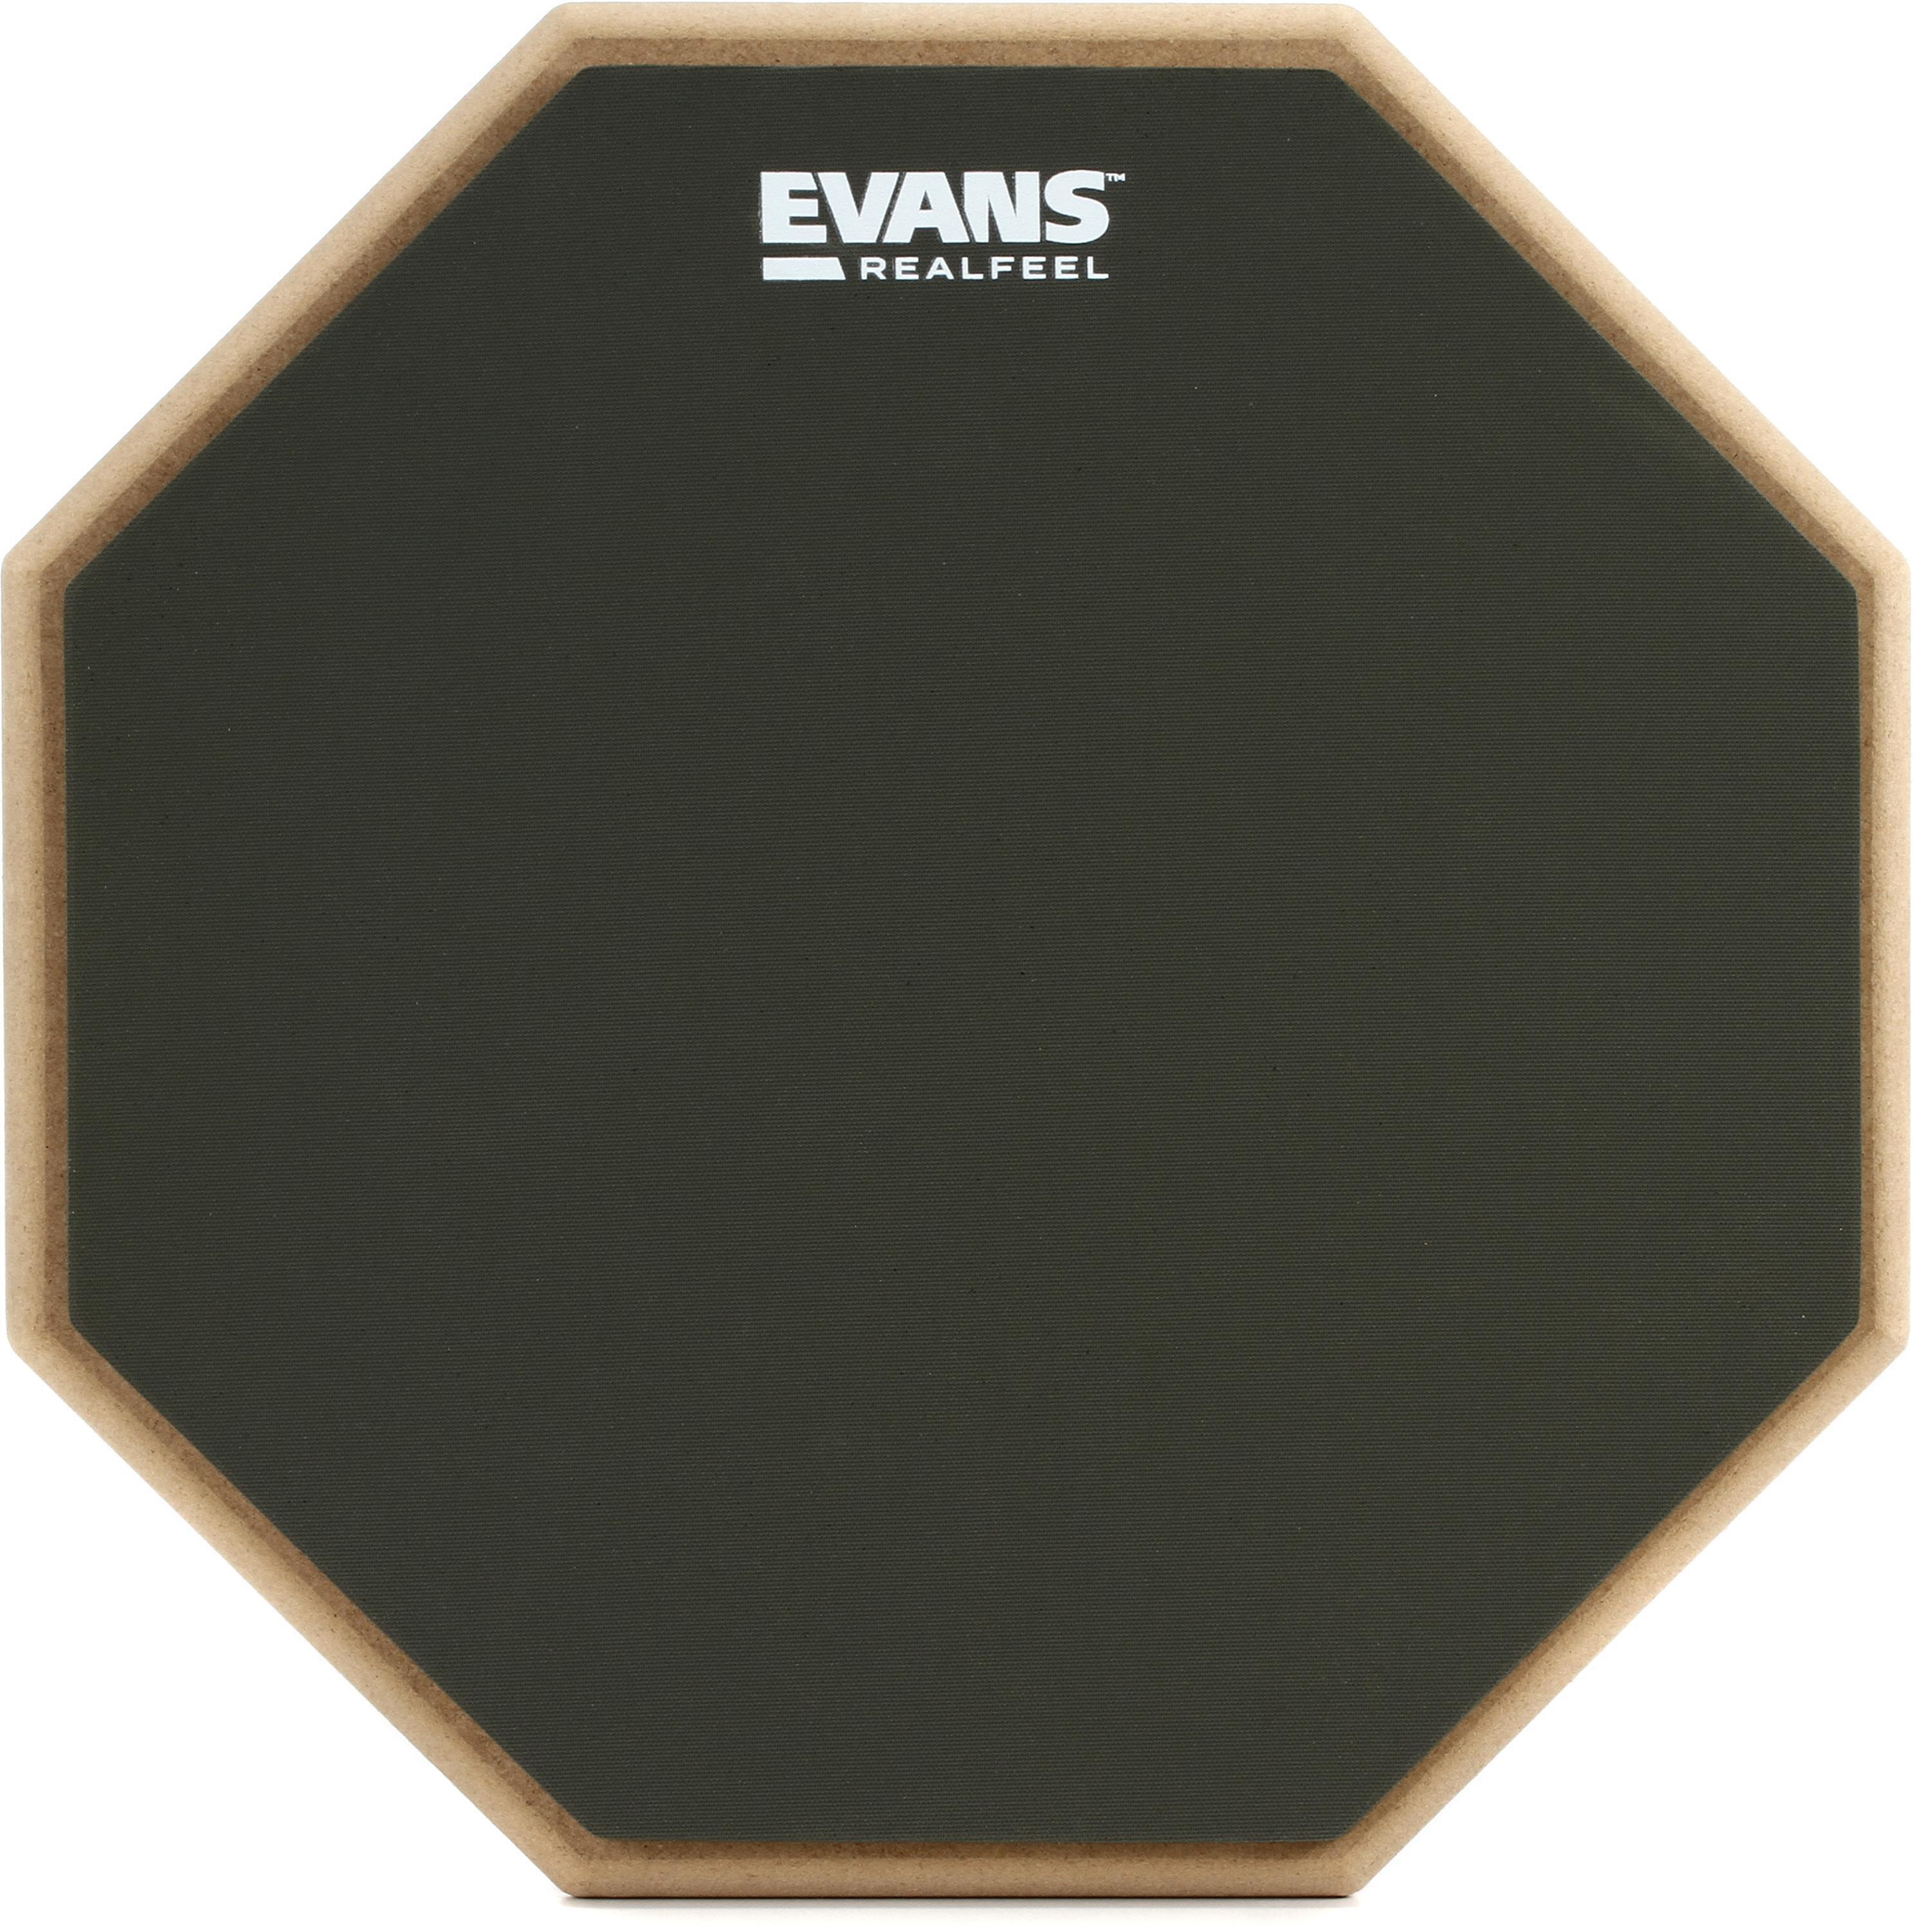 Evans RealFeel 2-sided Practice Drum Pad - 12 inch